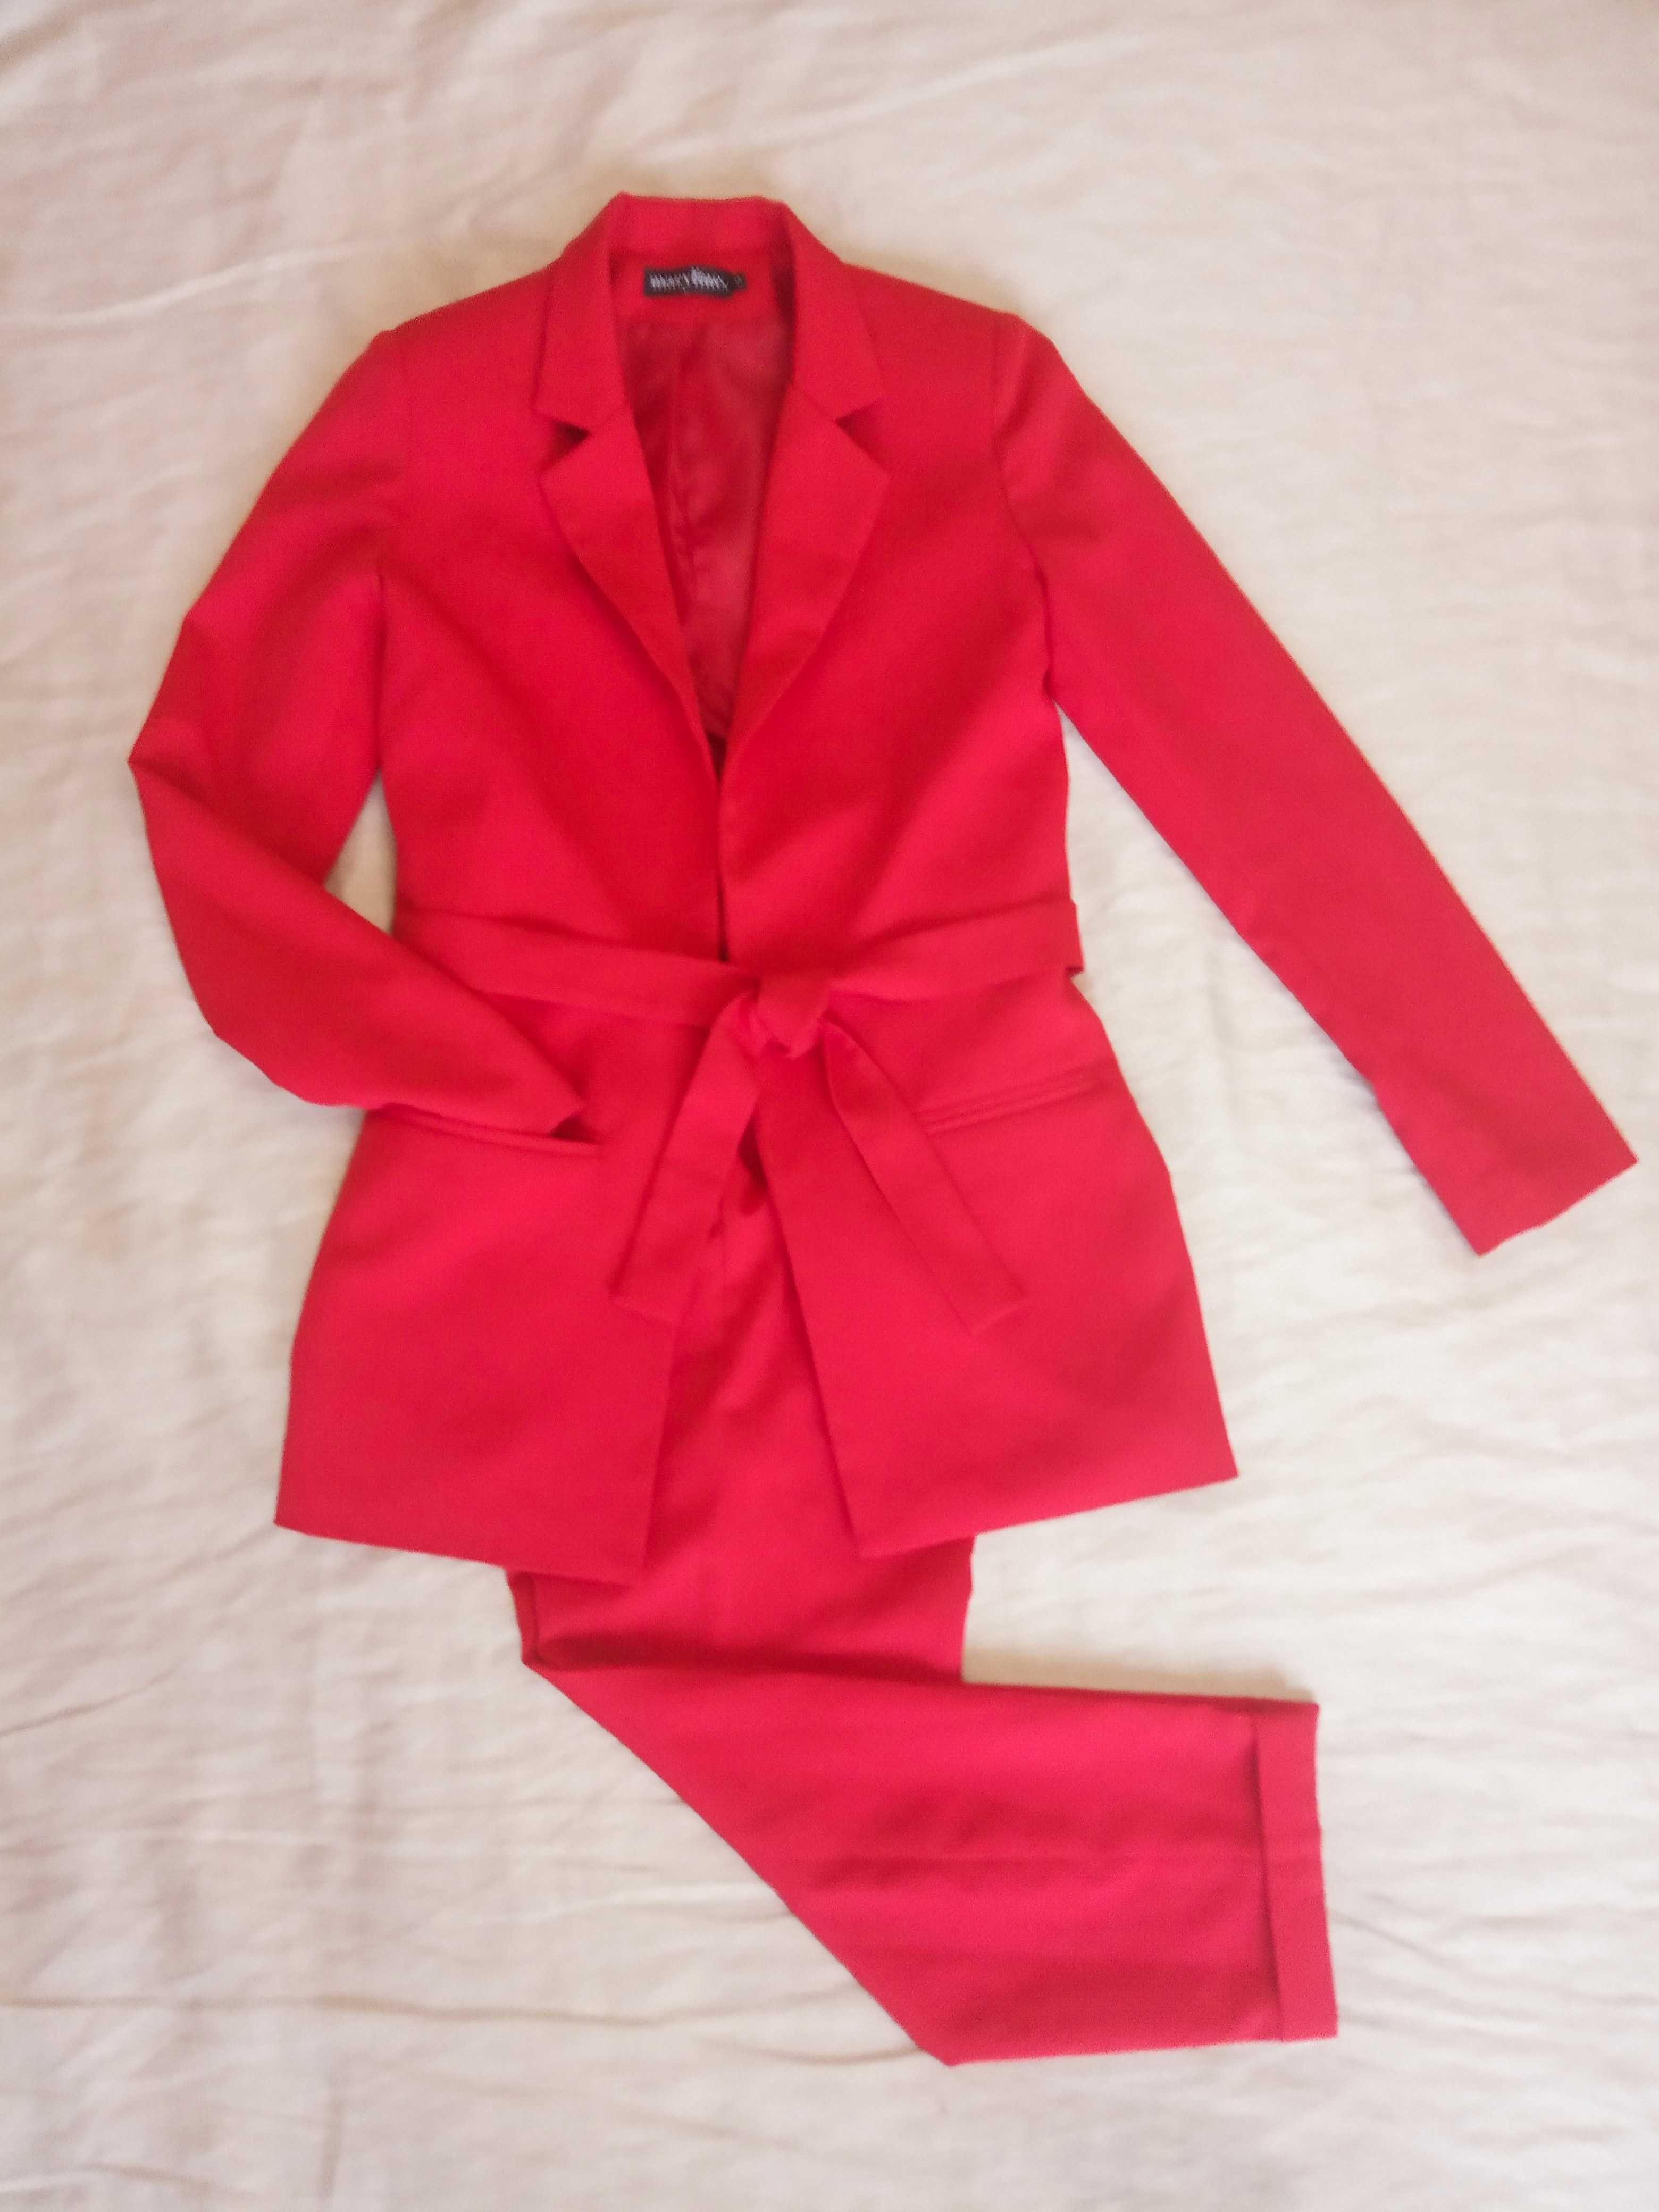 Жіночий червоний брючний костюм двійка maryline s/m український бренд